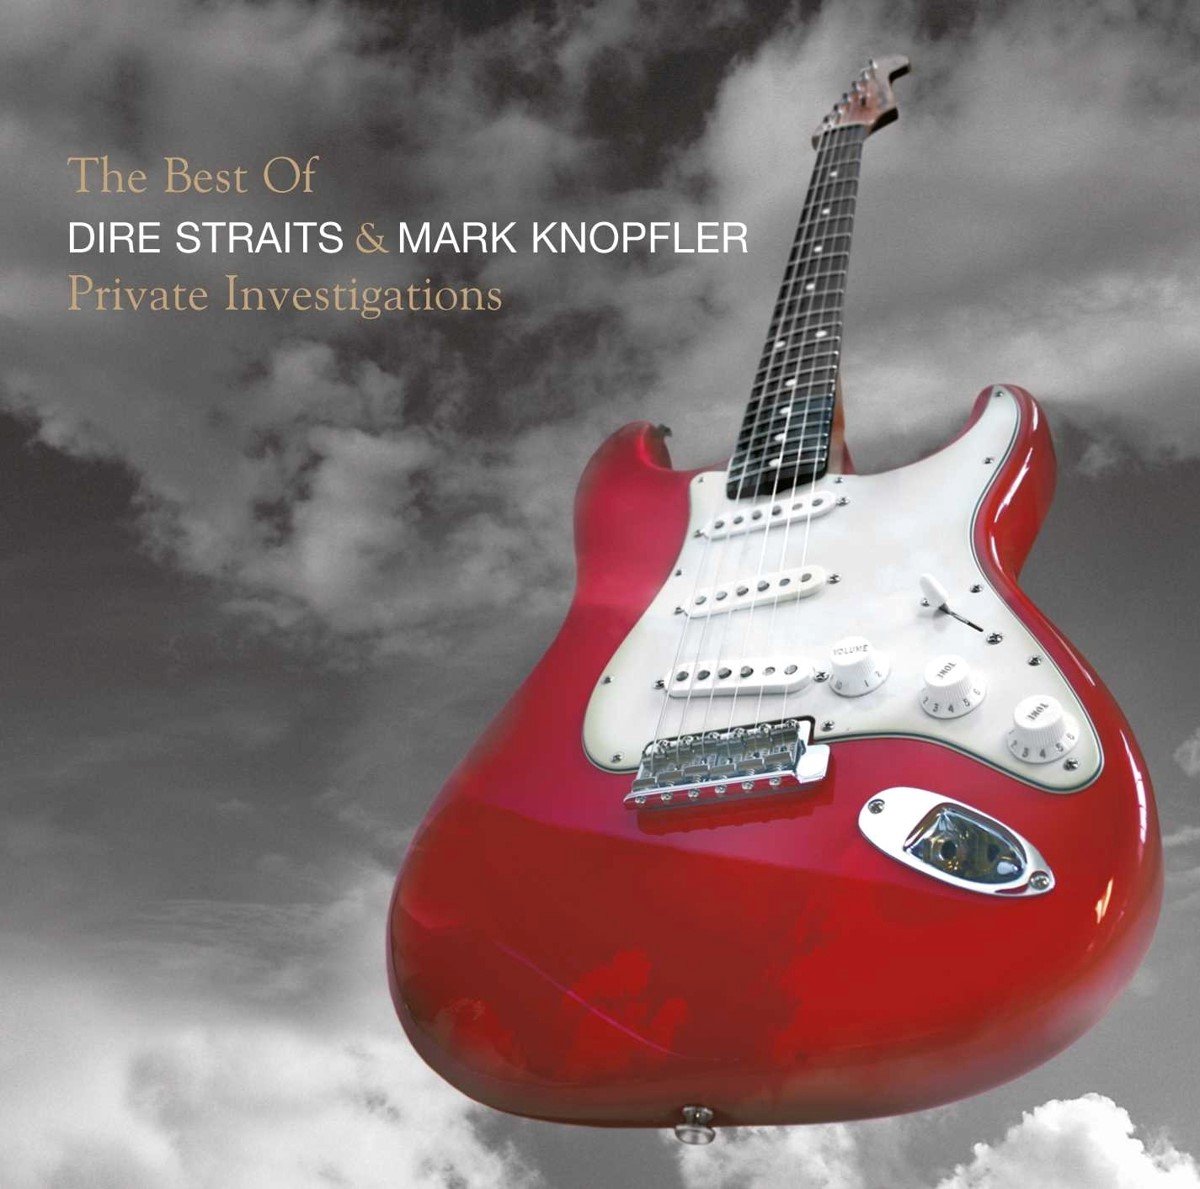 Dire Straits & Mark Knopfler - Private Investigations - The Best Of (CD) - Dire Straits & Mark Knopfler